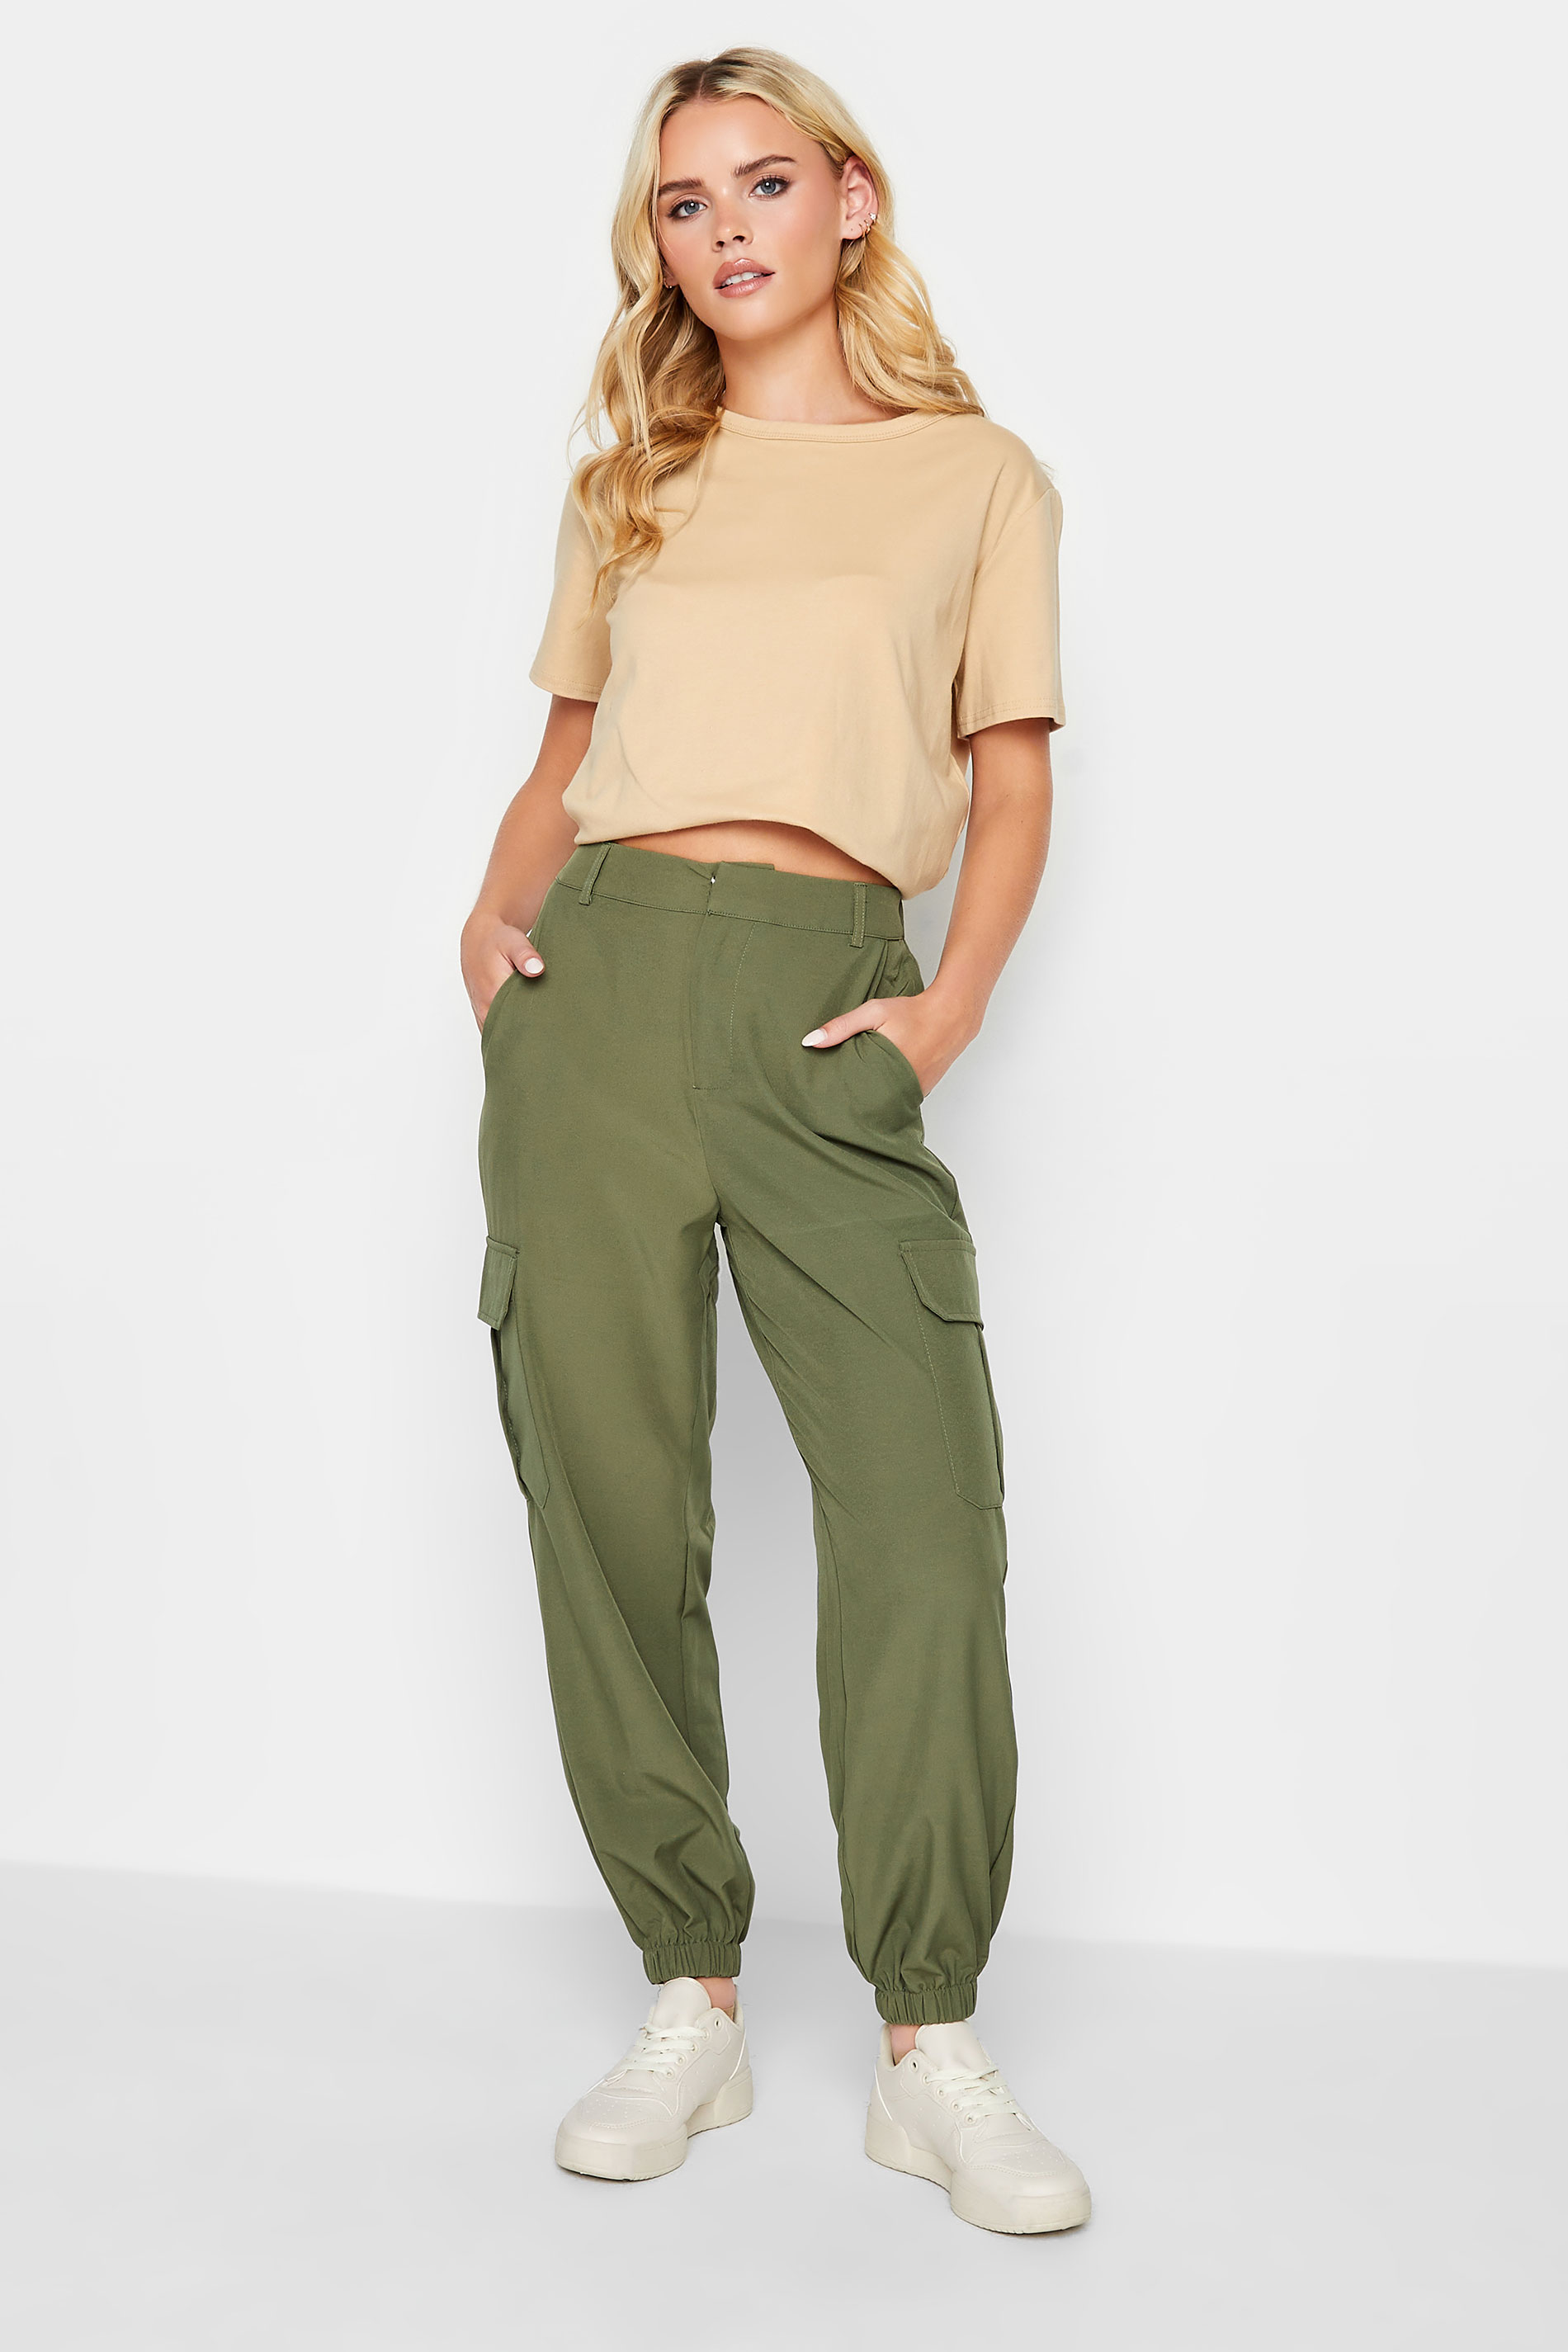 PixieGirl Khaki Green Cargo Trousers | PixieGirl 1